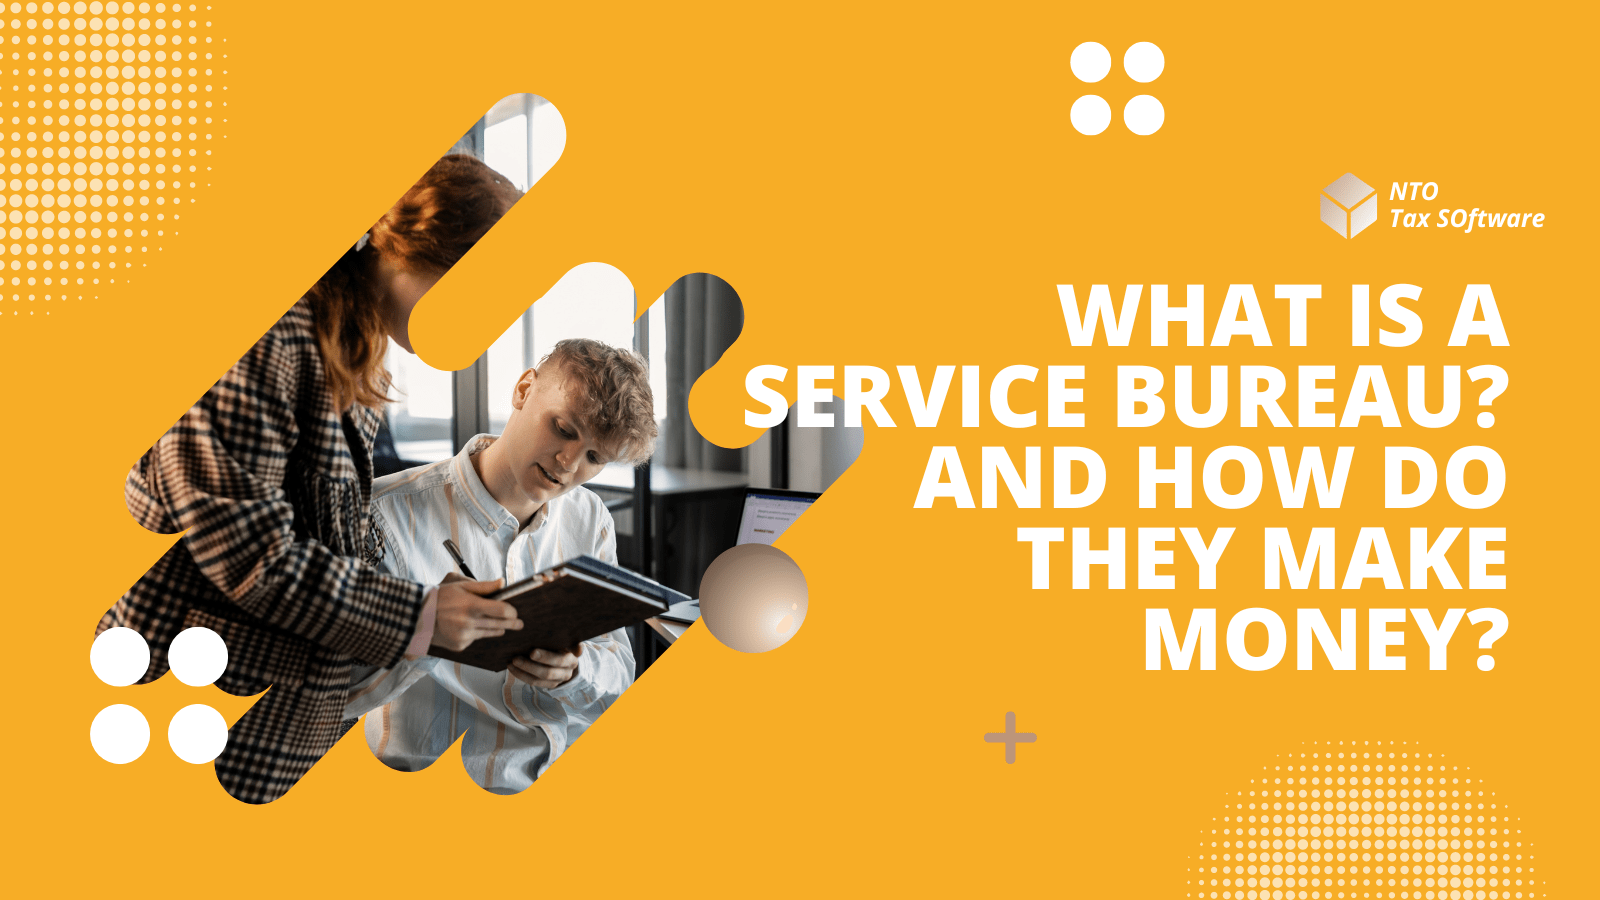 What is a service bureau?